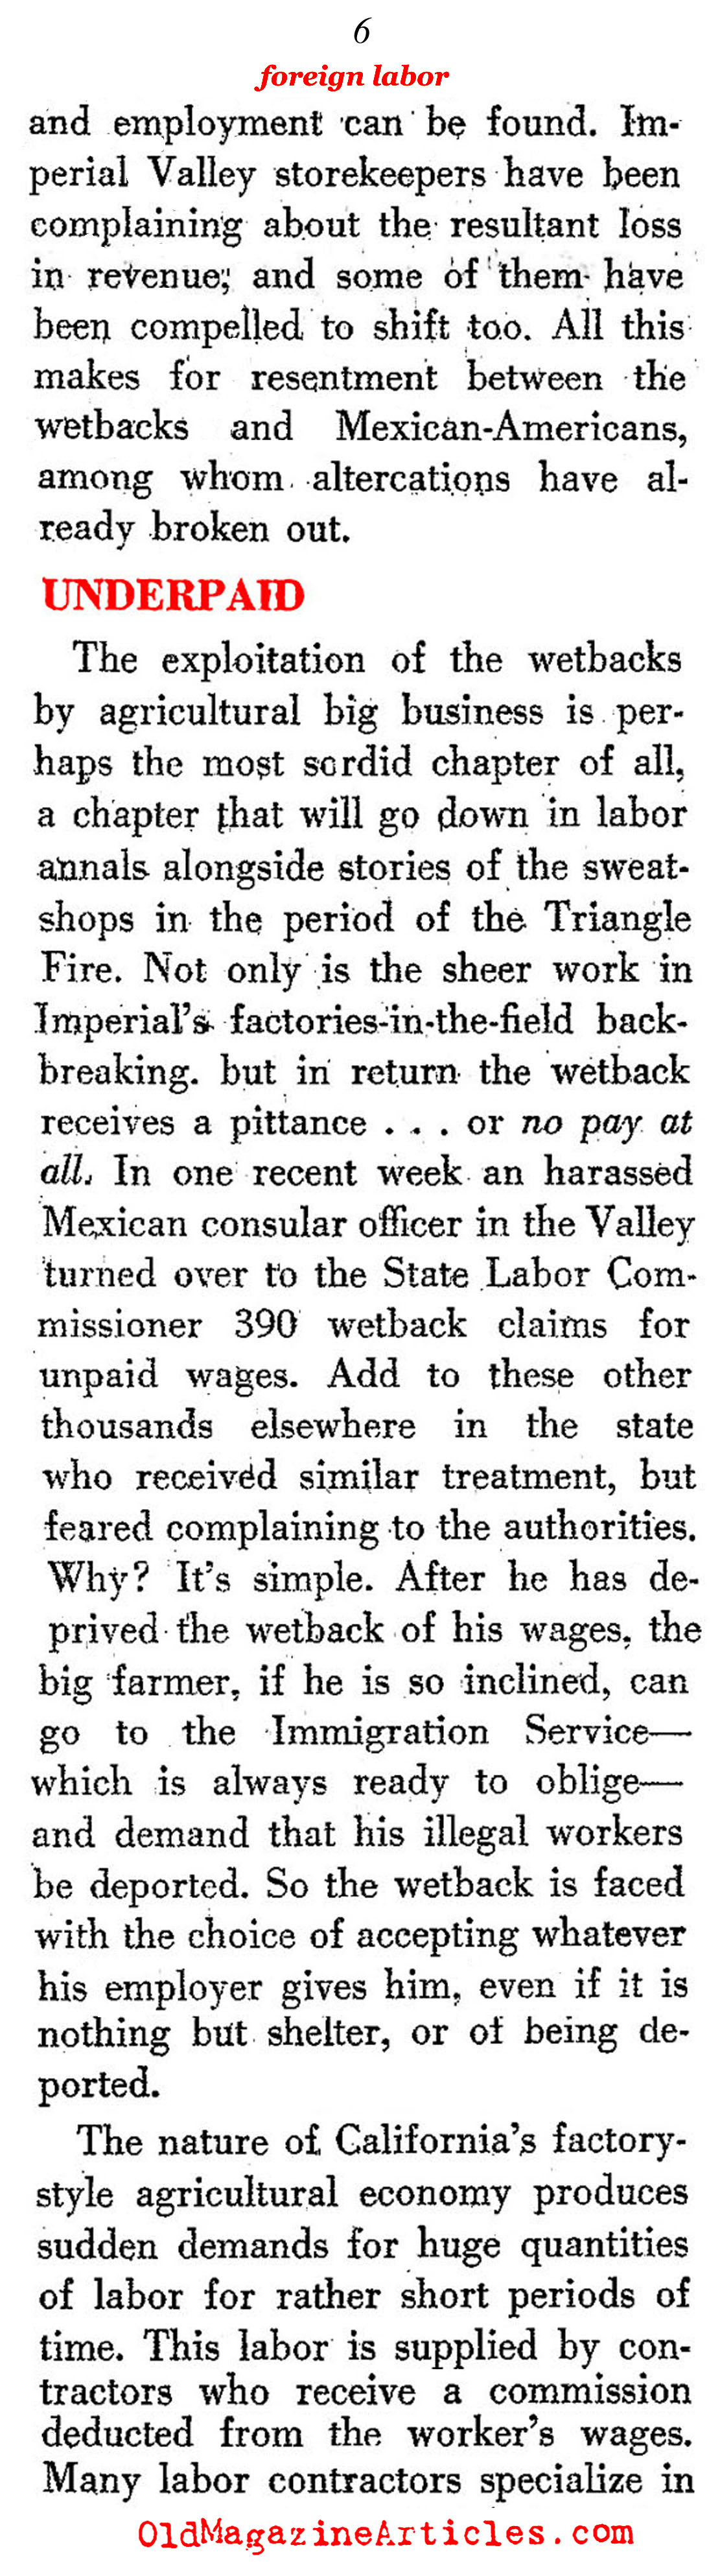 The Origins of <em>''Undocumented''</em> Labor (The New Leader, 1951)